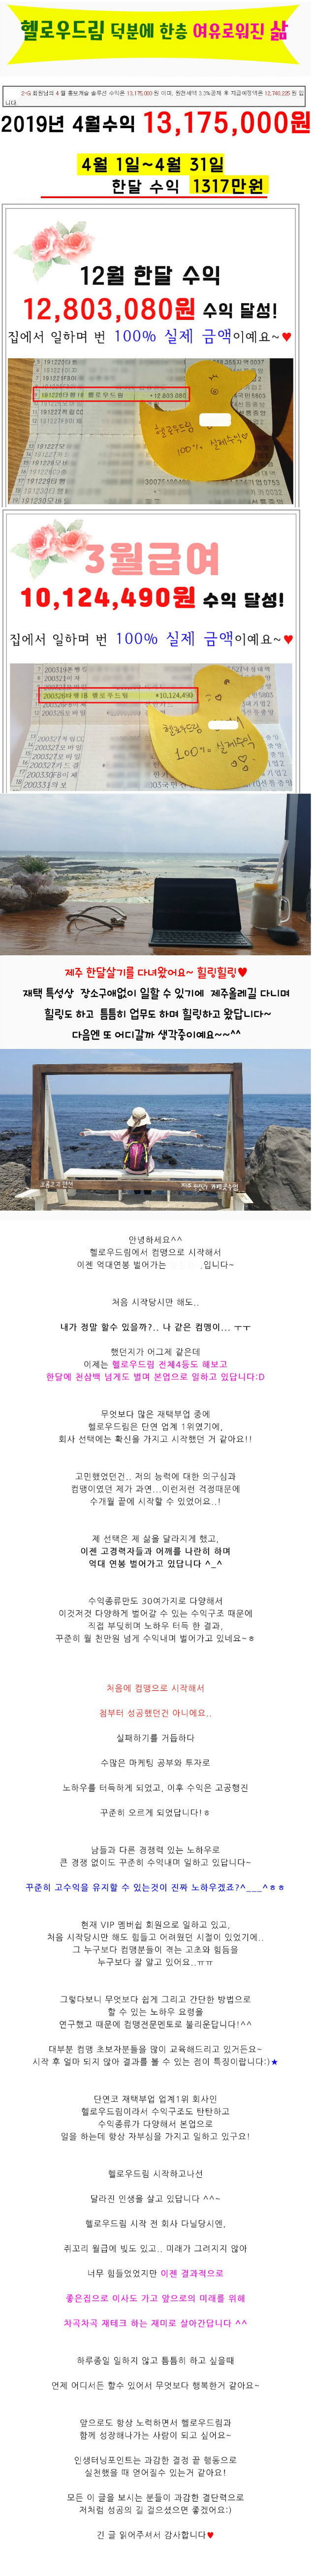 김경현2-GV(엘린언니).jpg